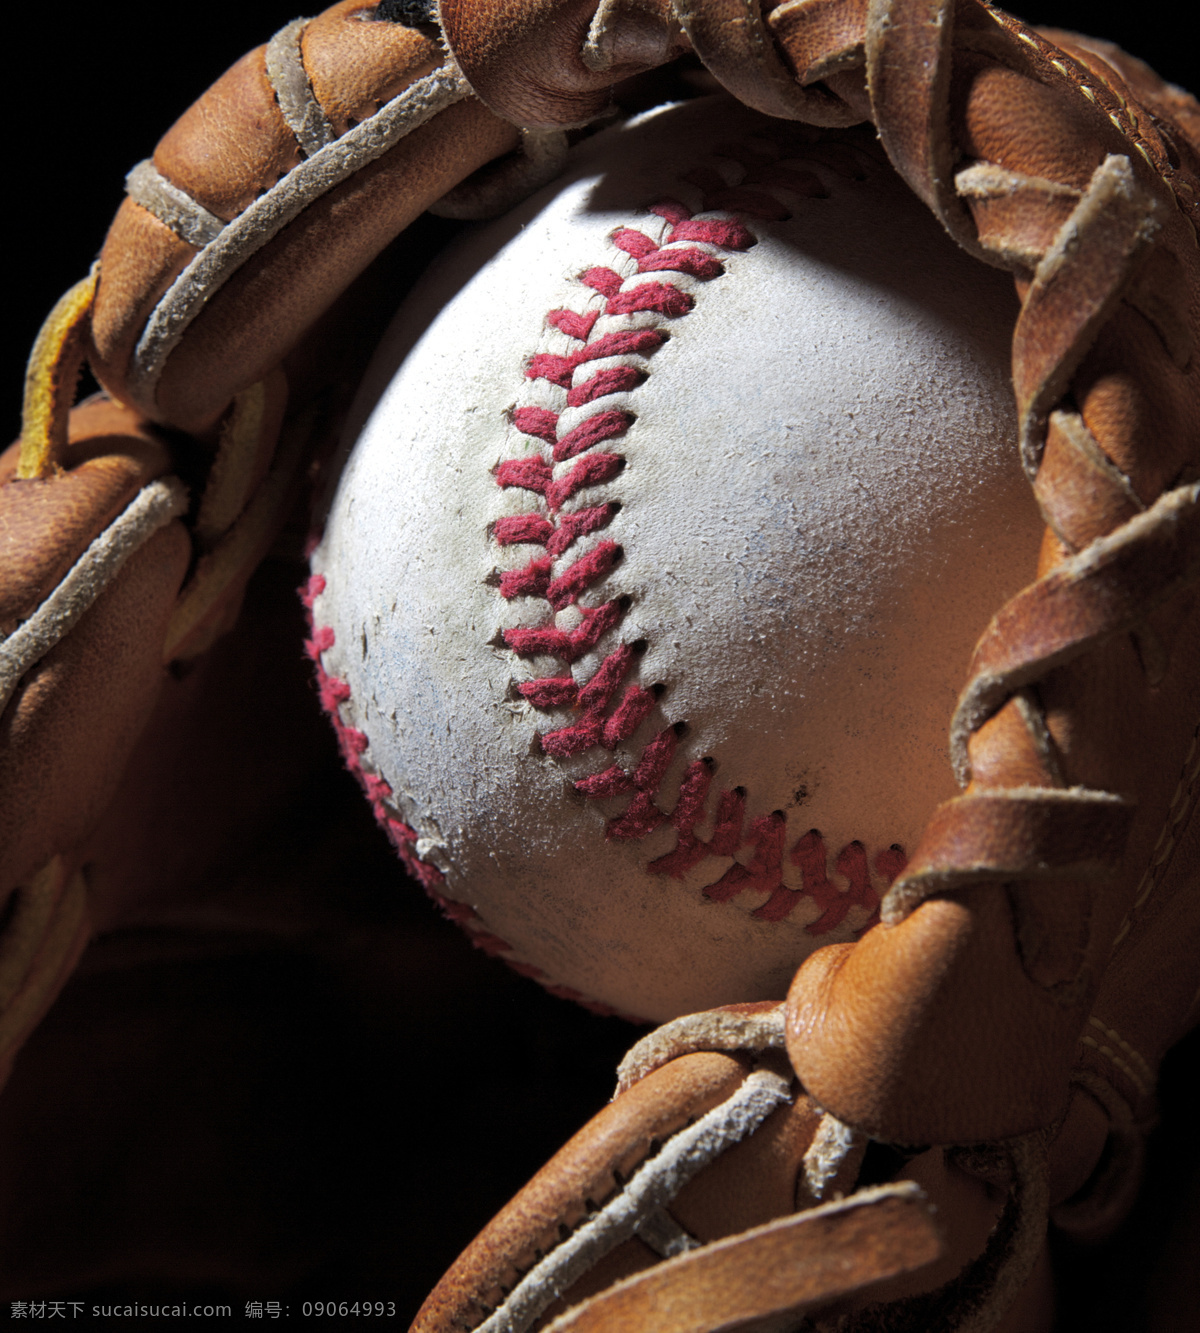 棒球特写 棒球 棒球手套 体育装备 体育运动 体育项目 生活百科 黑色